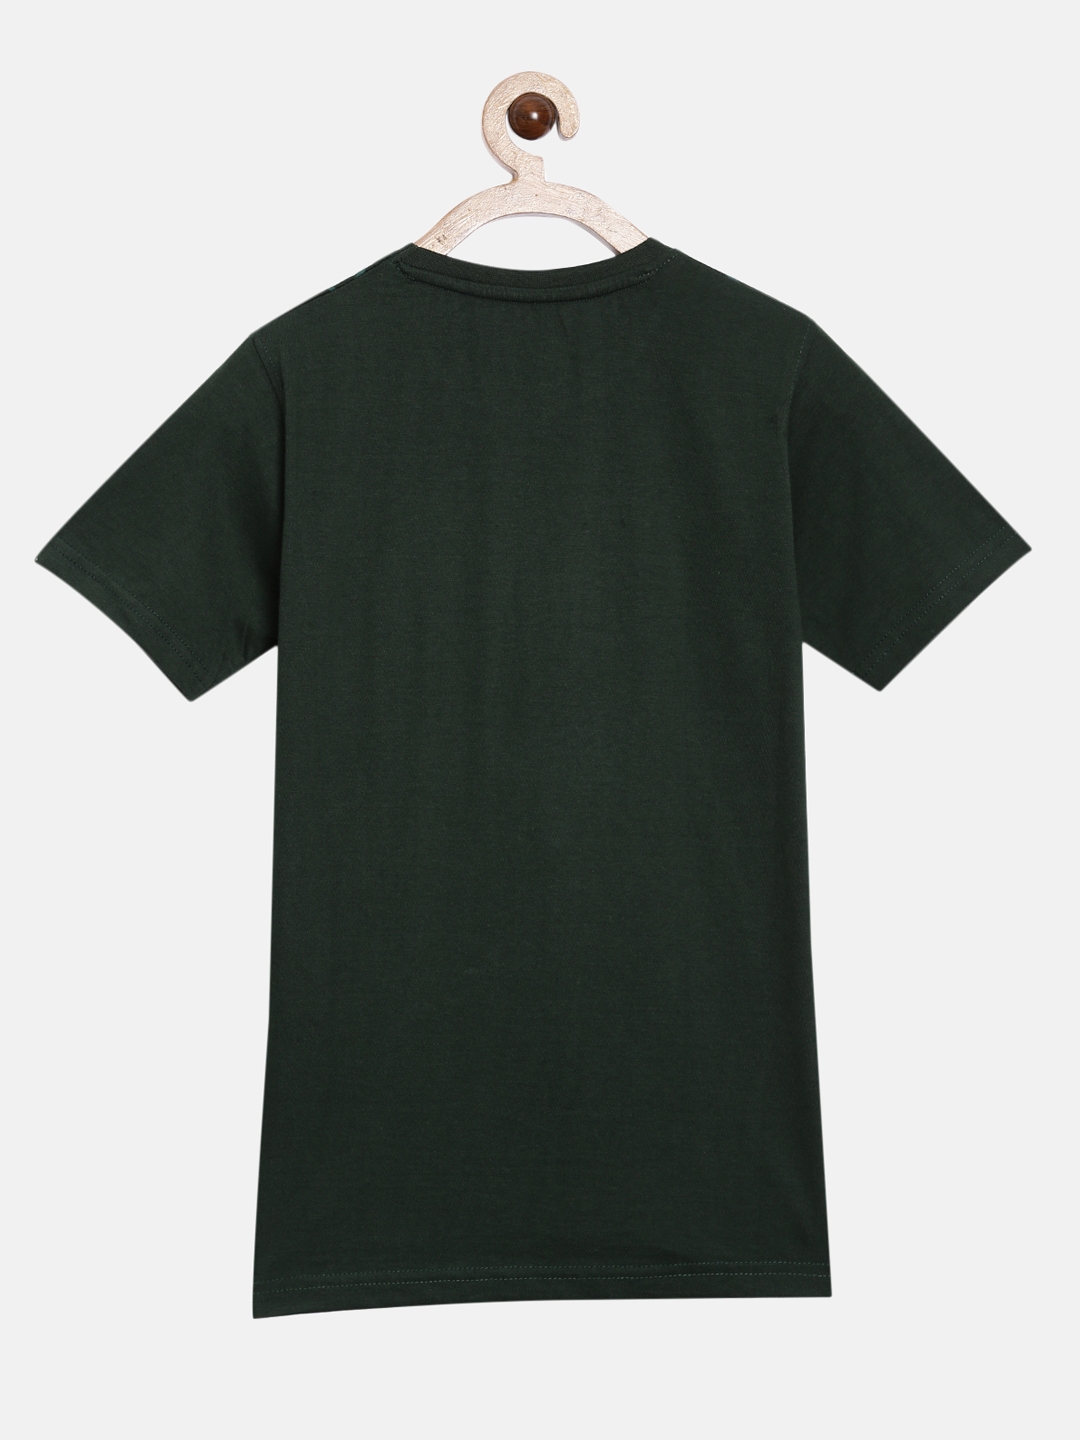 Peejas | Peejas 100% Cotton Boys  Printed Round Neck Short Sleeves Tshirts 2